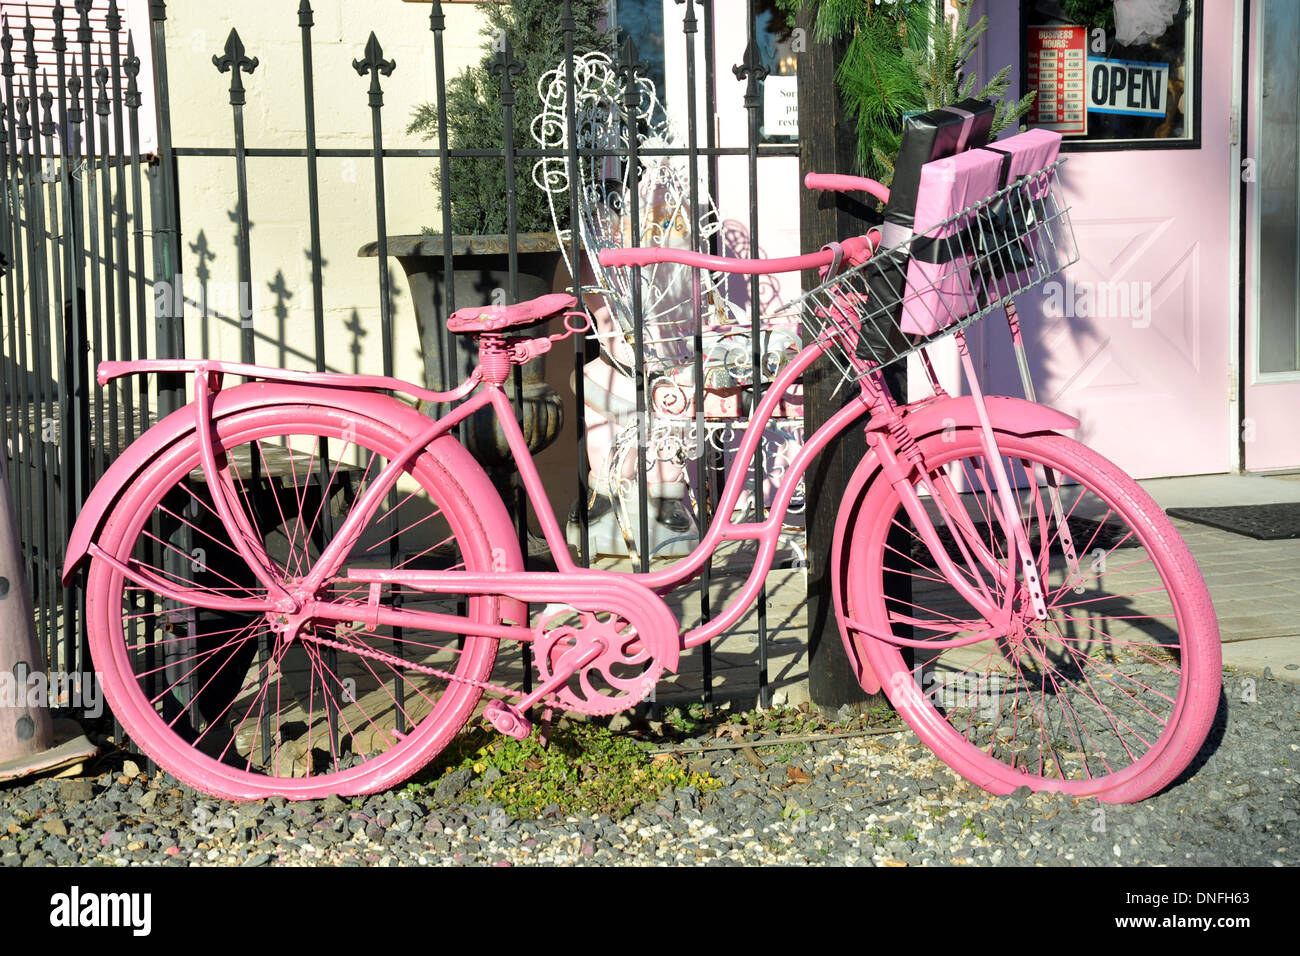 Las niñas rosa bicicleta estacionada en la verja de hierro negro con el regalo en la cesta Foto de stock